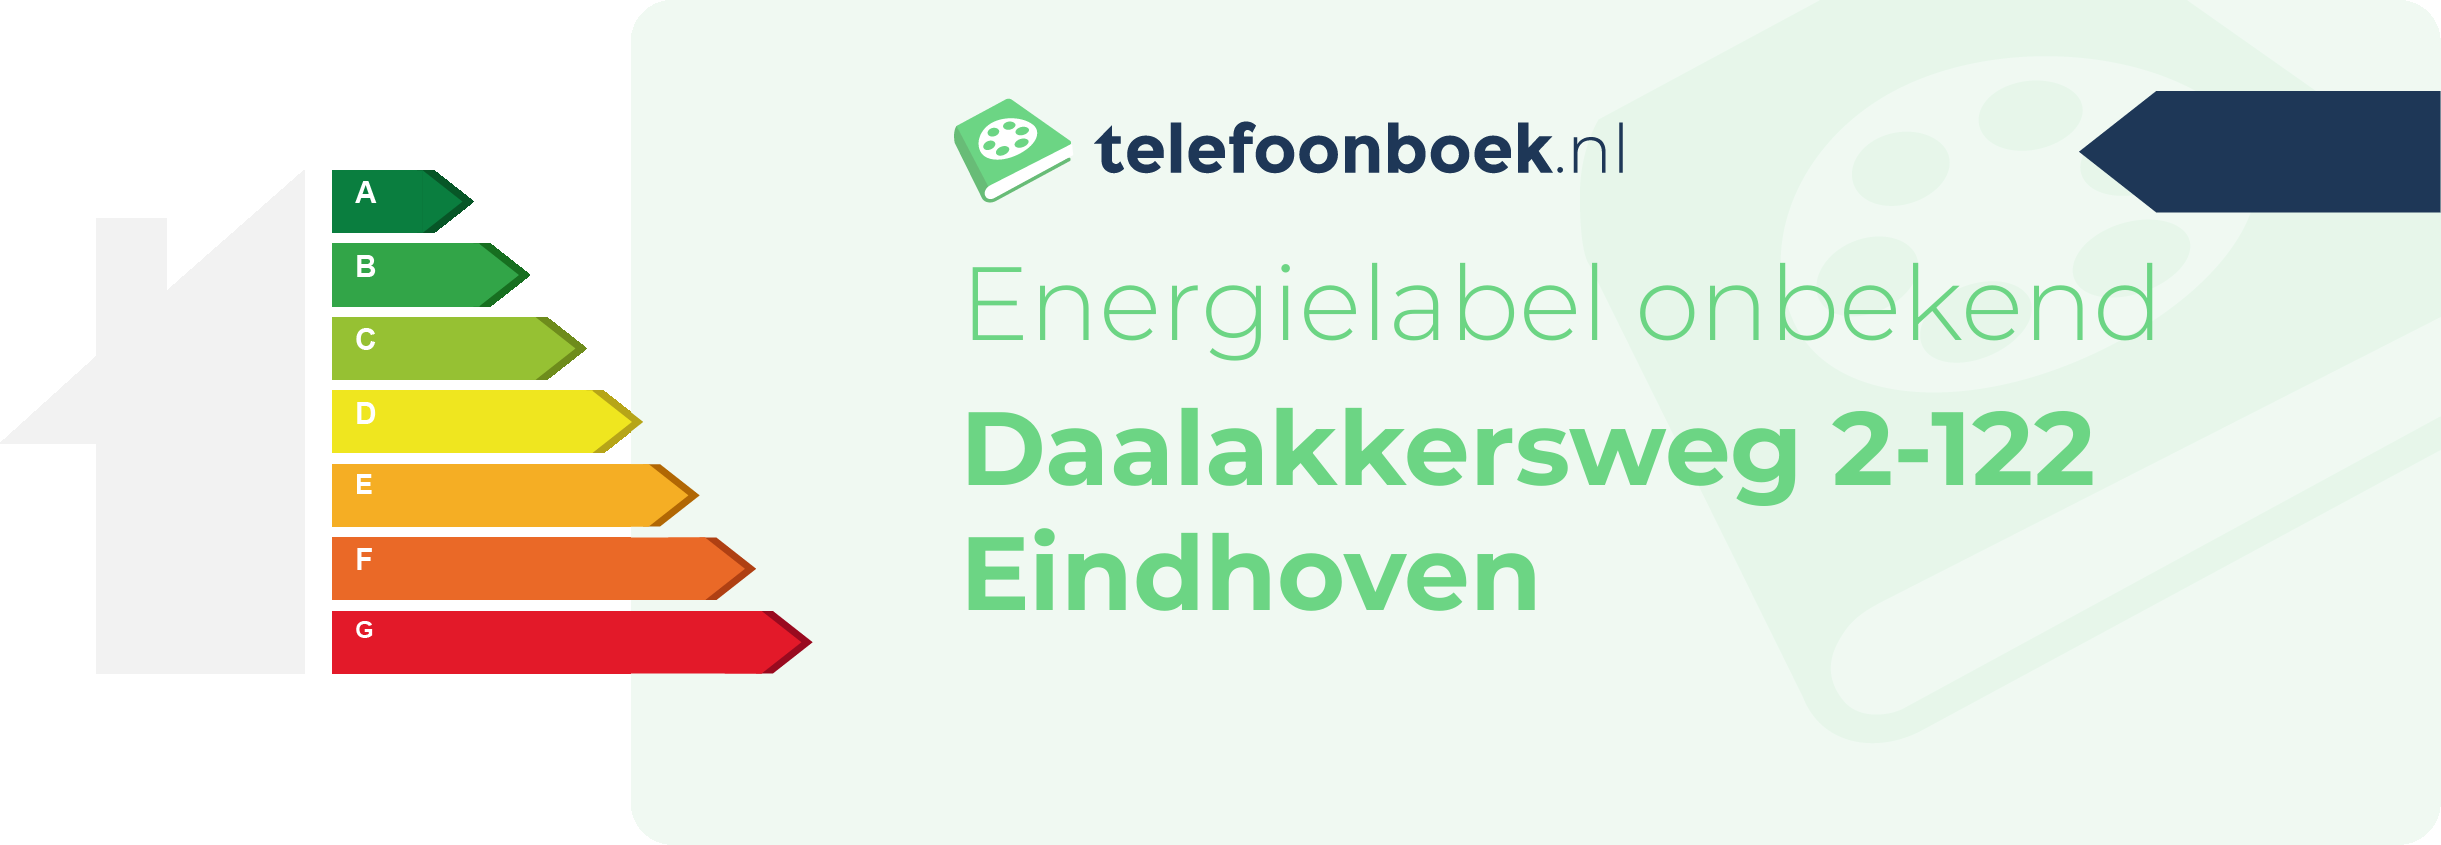 Energielabel Daalakkersweg 2-122 Eindhoven